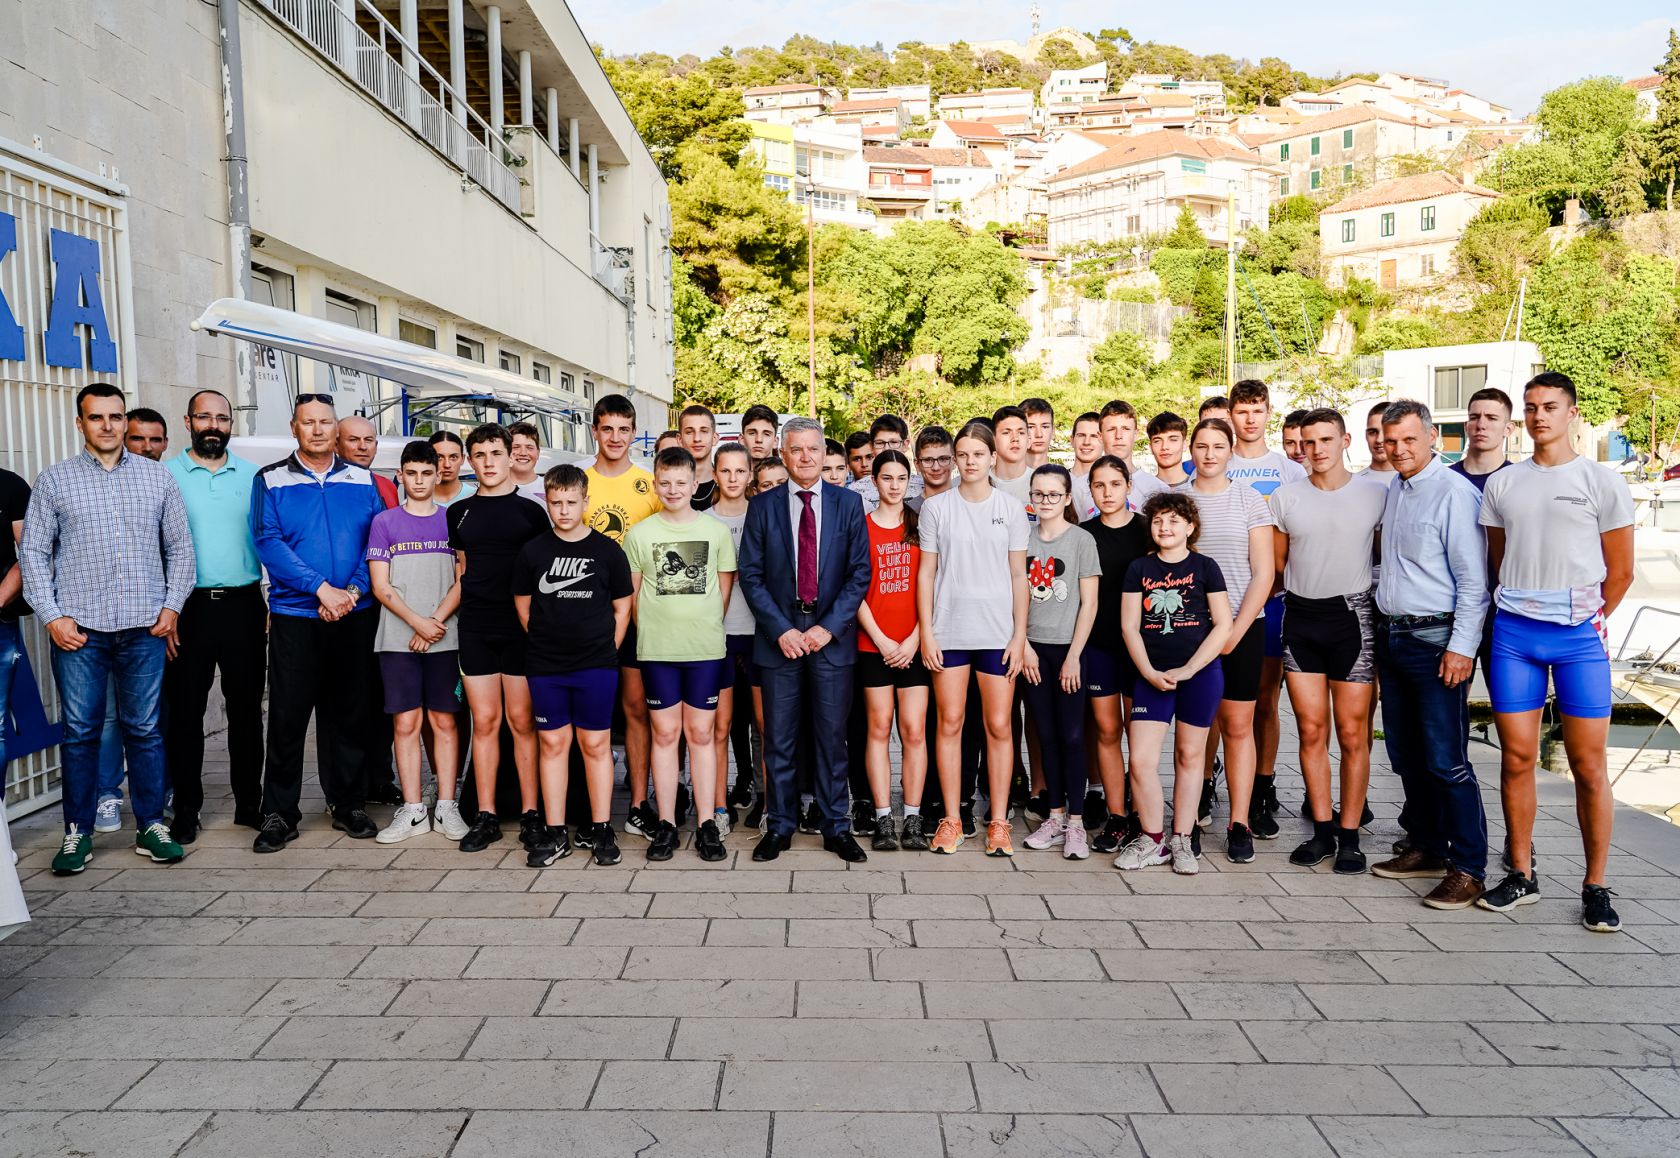 Gradonačelnik Burić posjetio veslačice i veslače Krke i čestitao im na izvrsnim rezultatima  